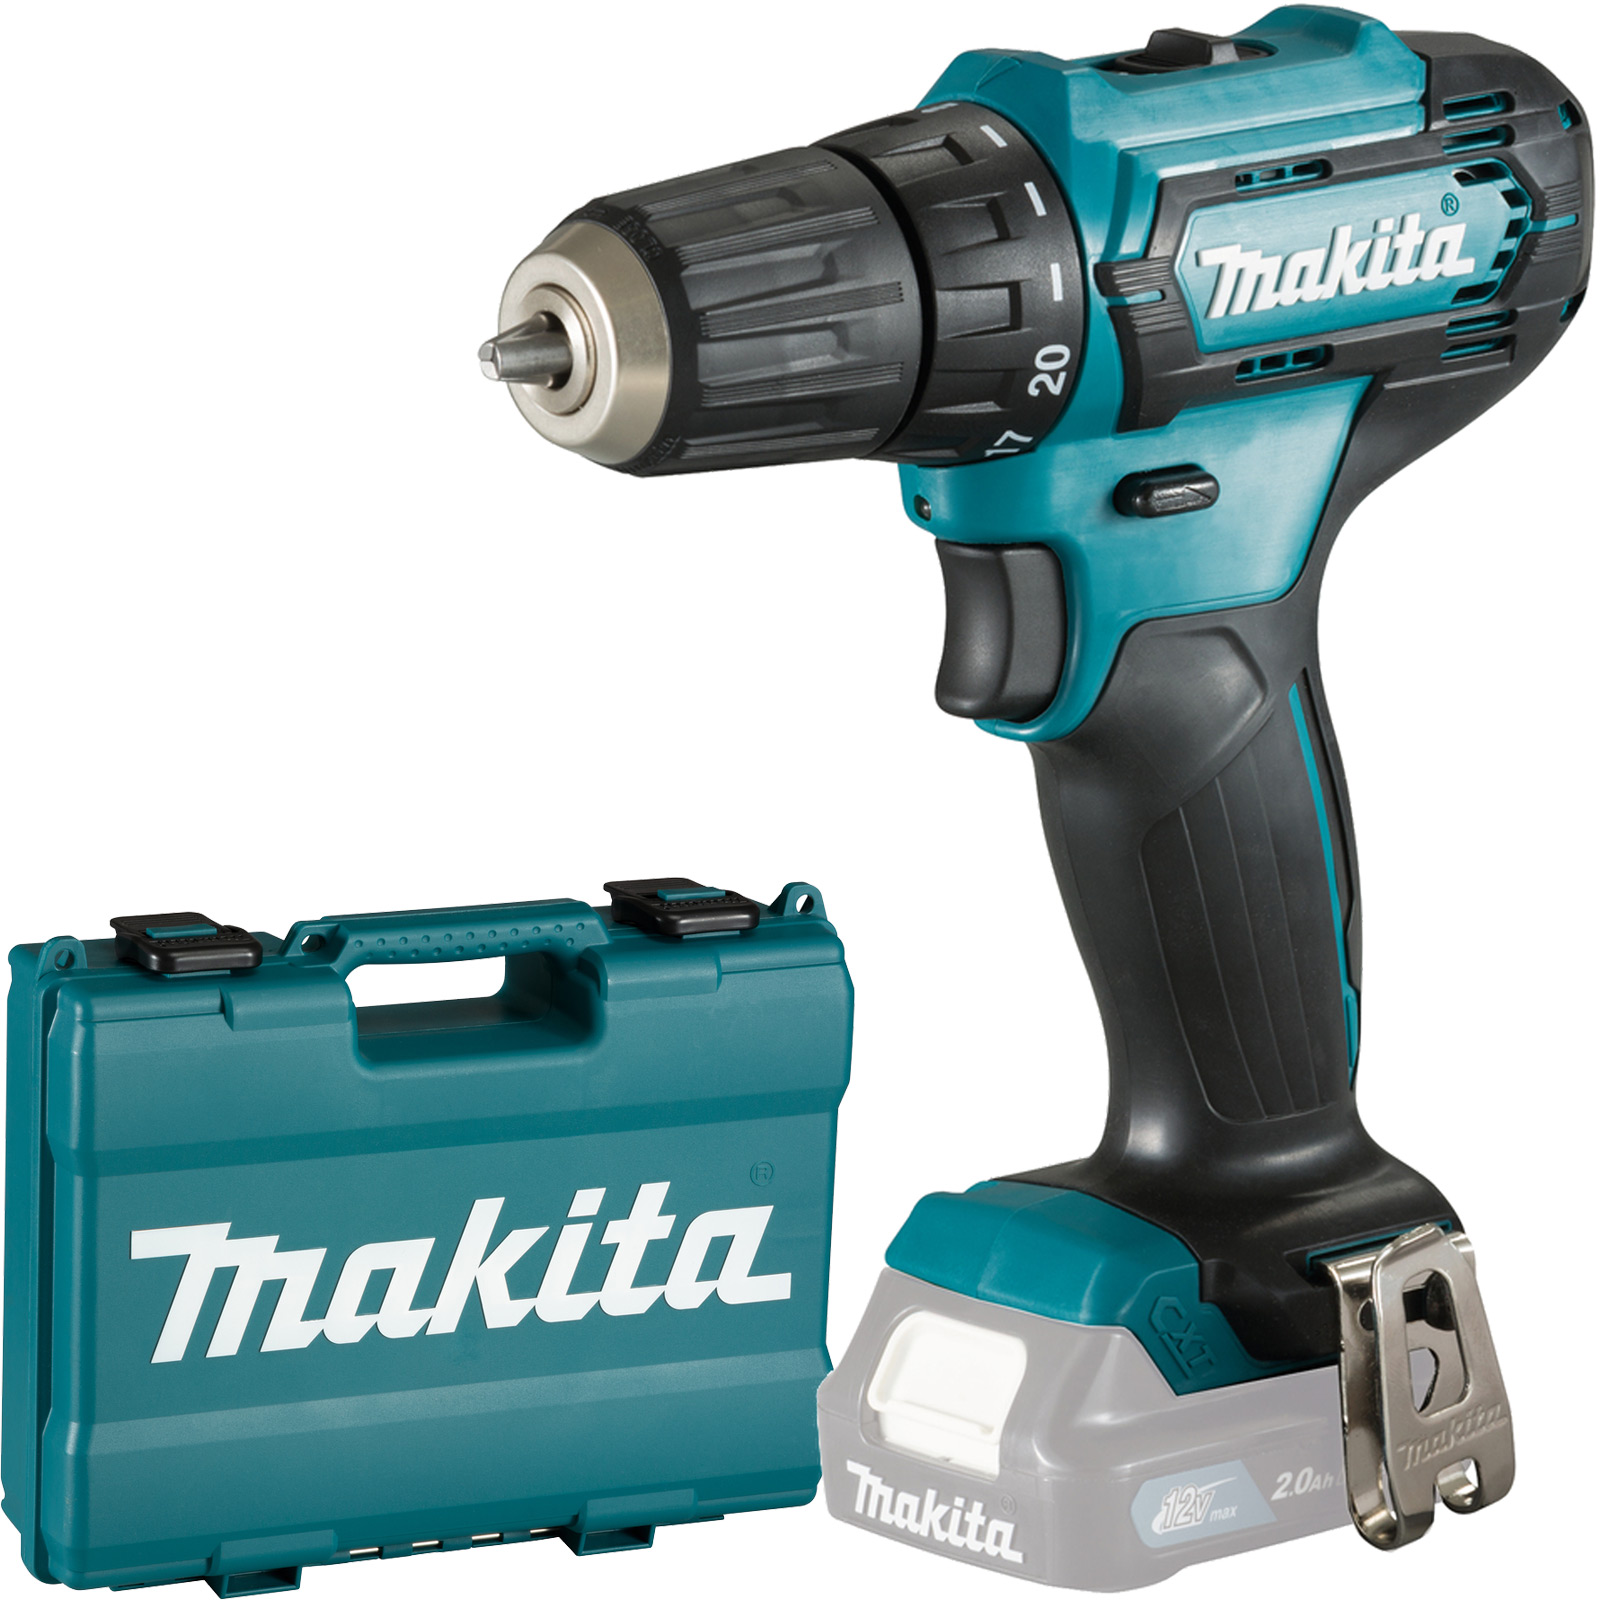 Makita Werkzeug GmbH - Auch für kalte Tage bestens geeignet: Die